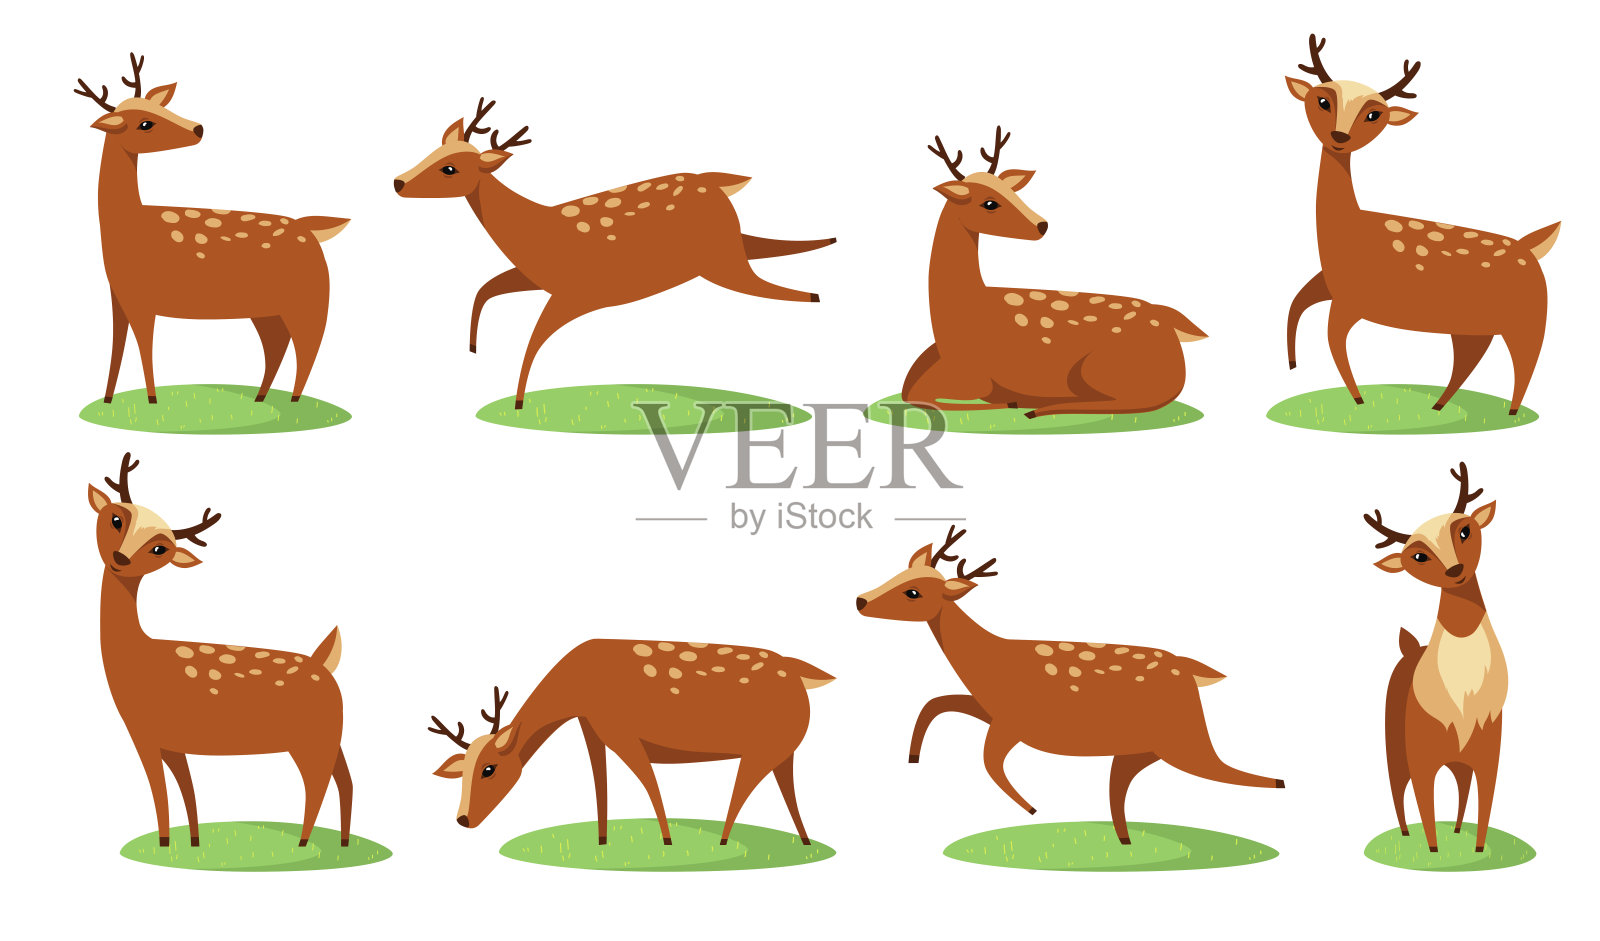 有趣的小鹿扁图标设置插画图片素材